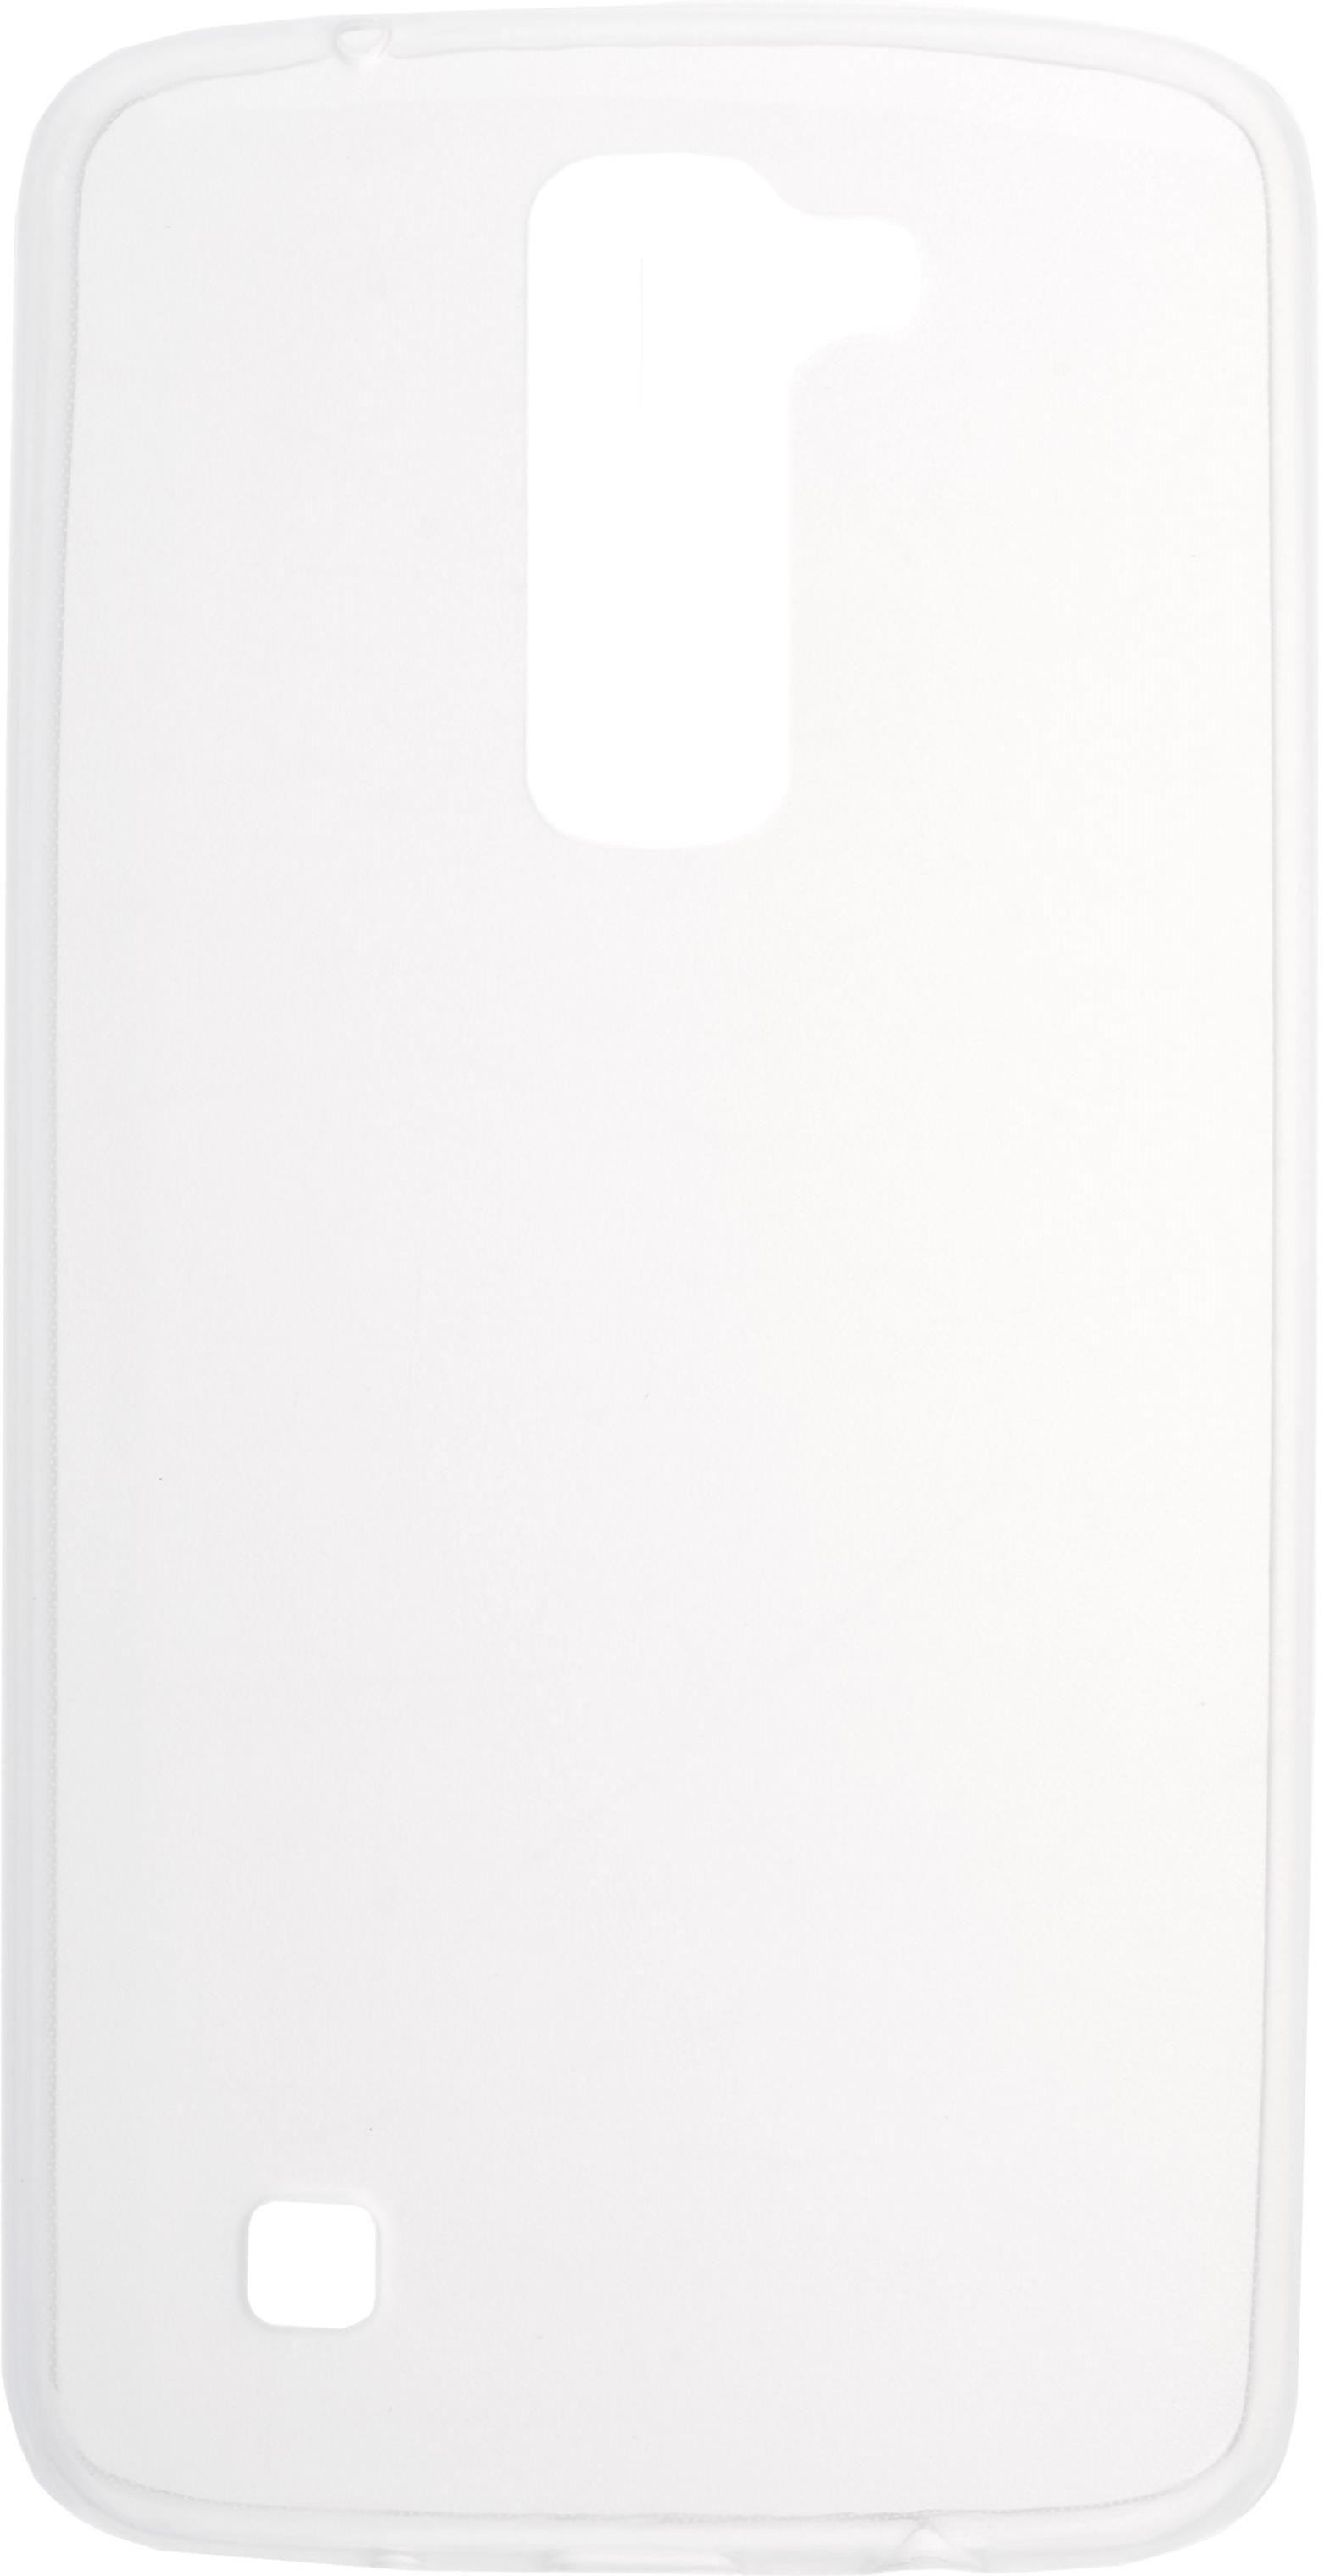 Чехол для LG K7 X210 Skinbox slim silicone, прозрачный